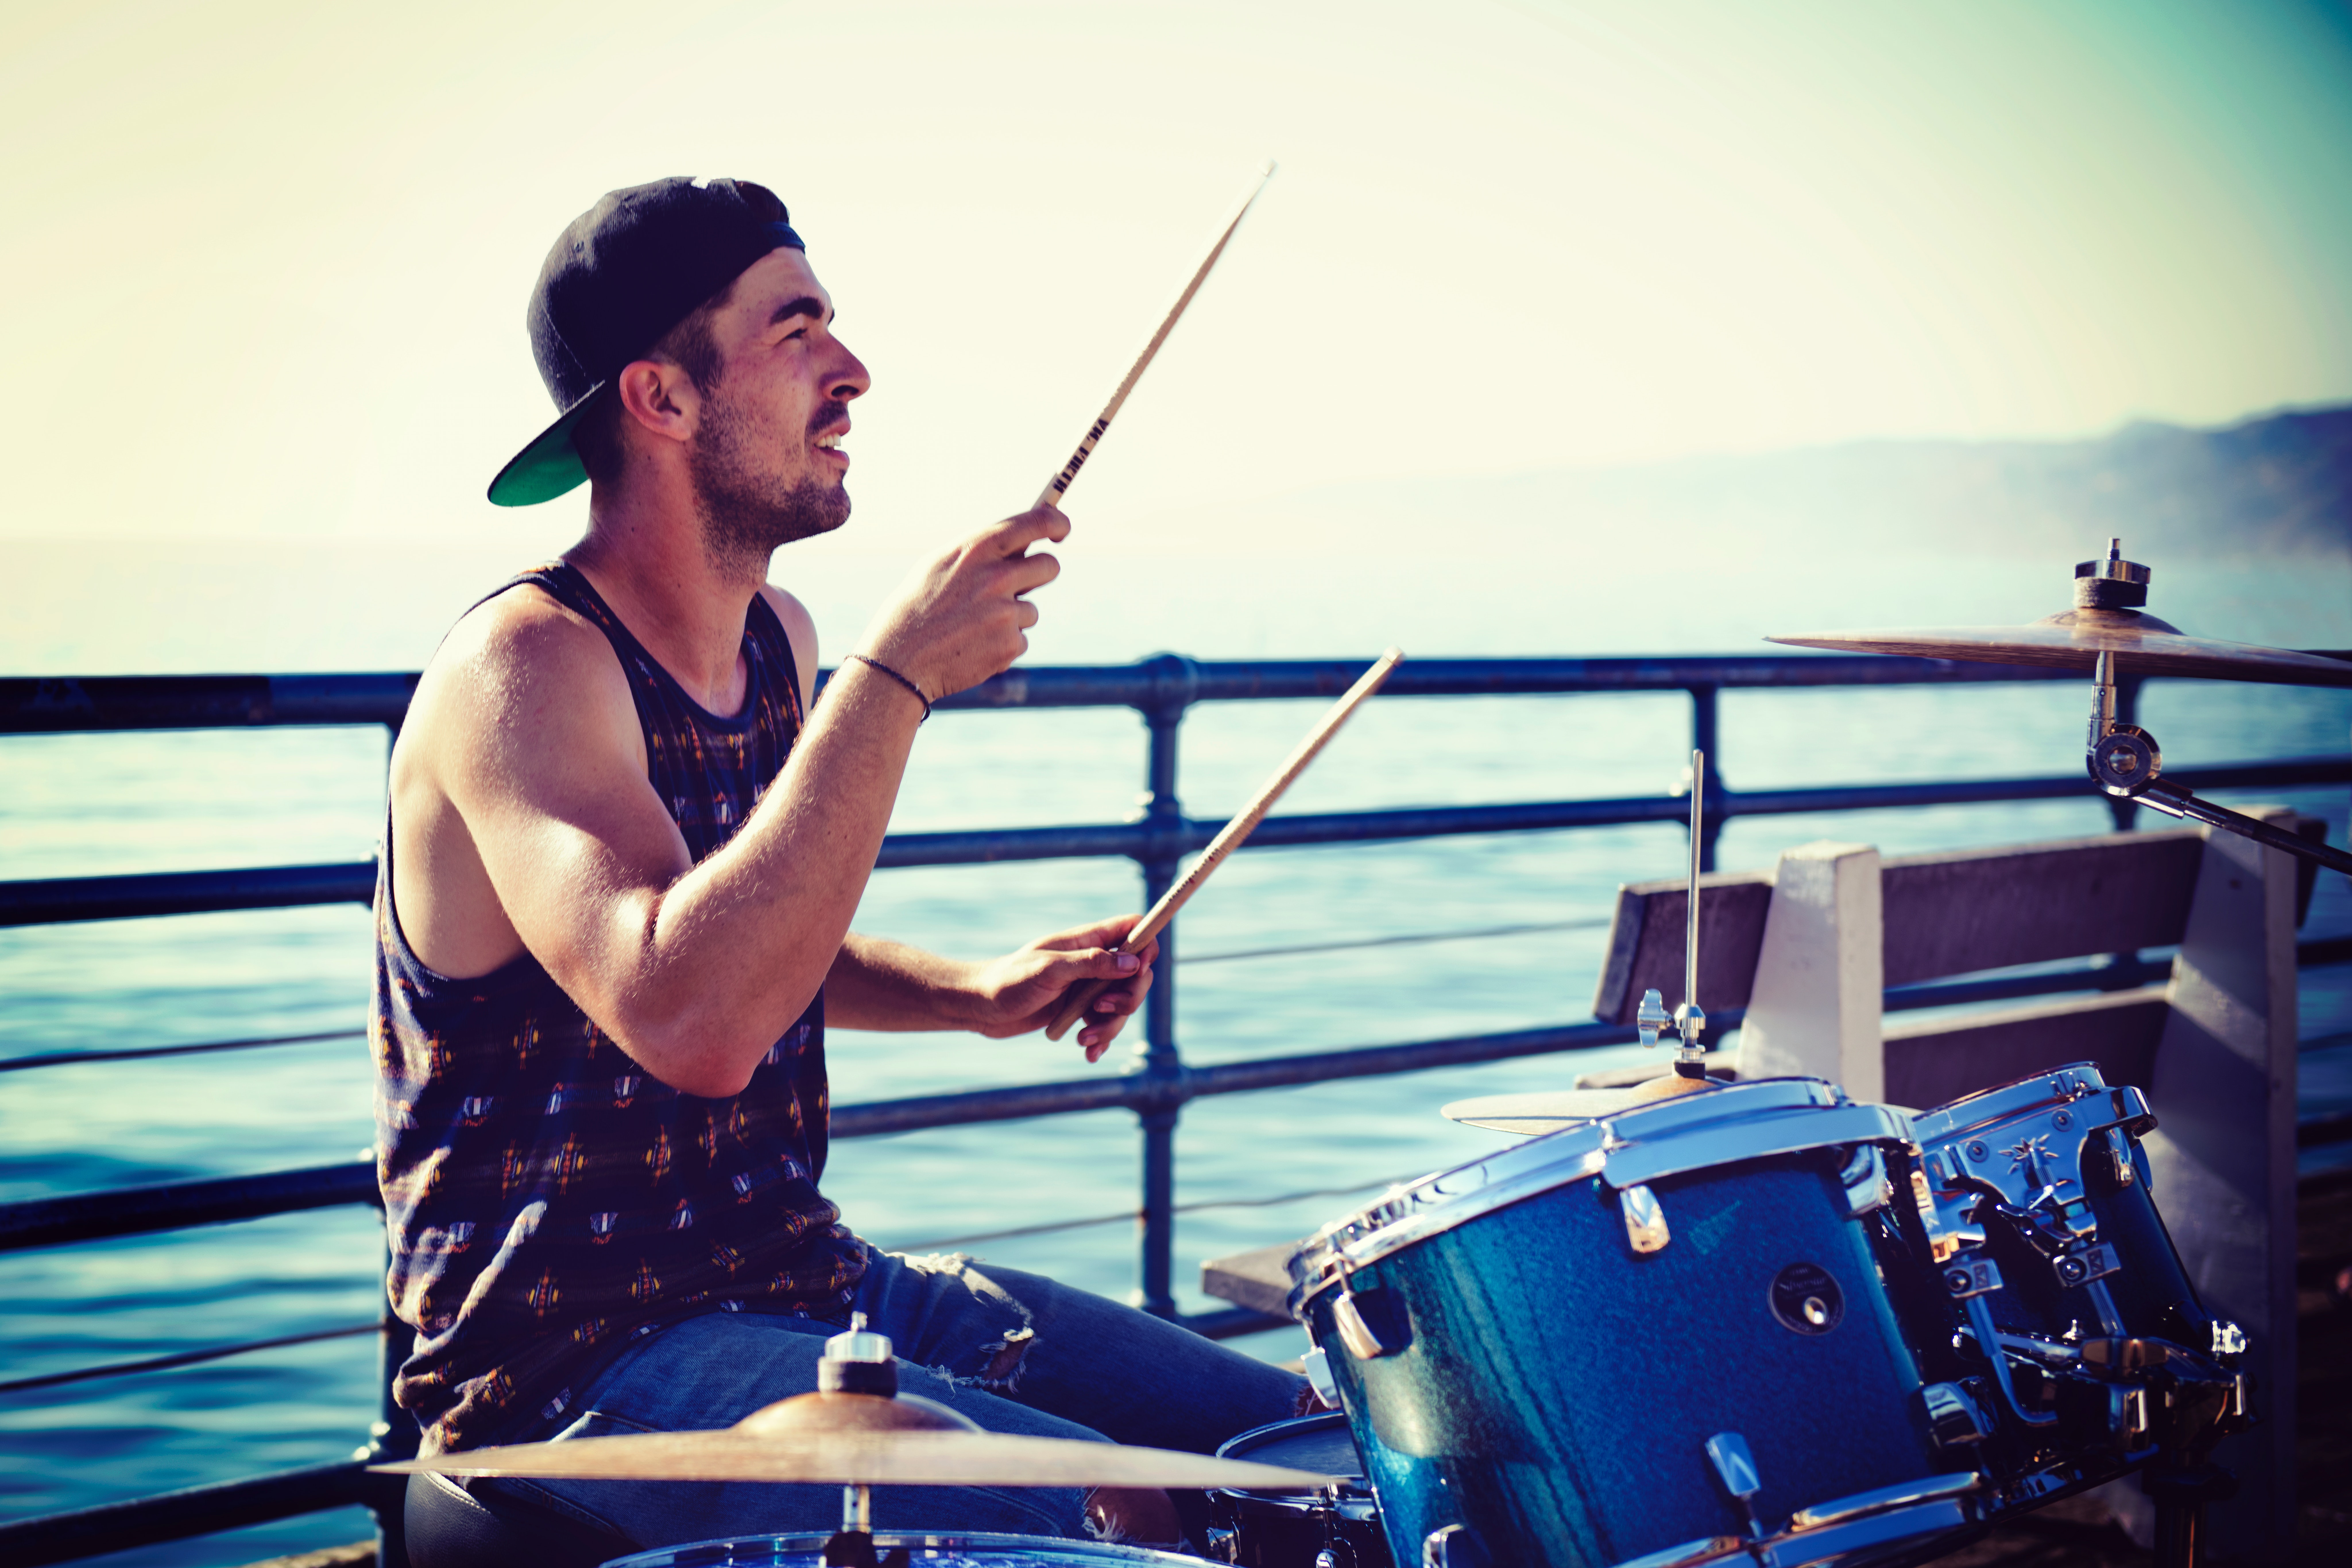 Man Playing Drums, Artist, Ocean, Street musician, Street artist, HQ Photo